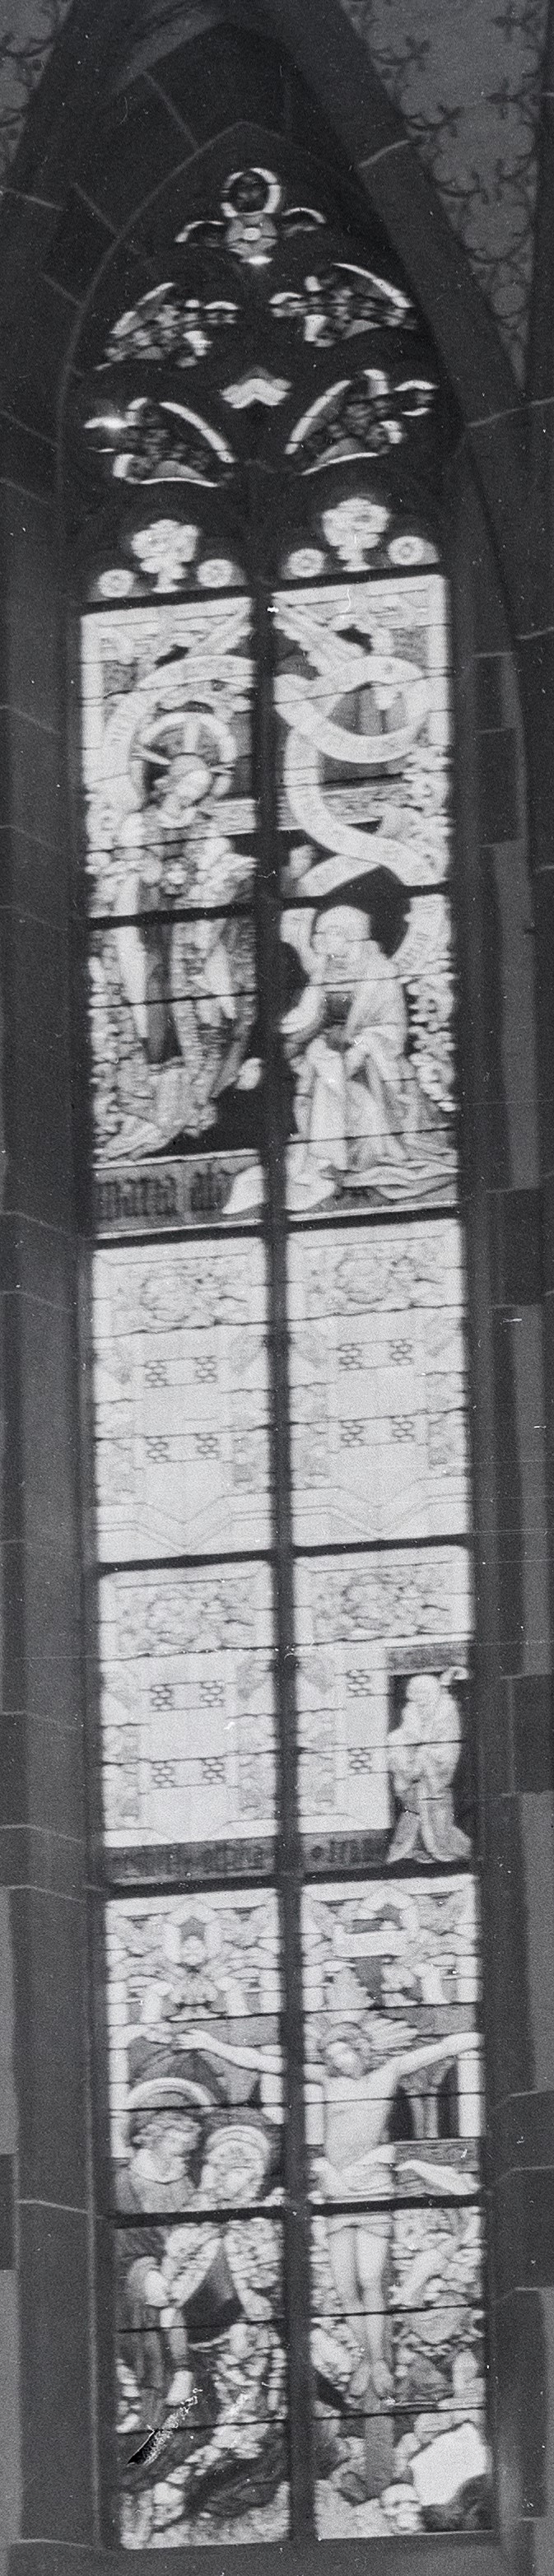 Herz Jesu Chor Fenster 3 (c) St. Elisabeth